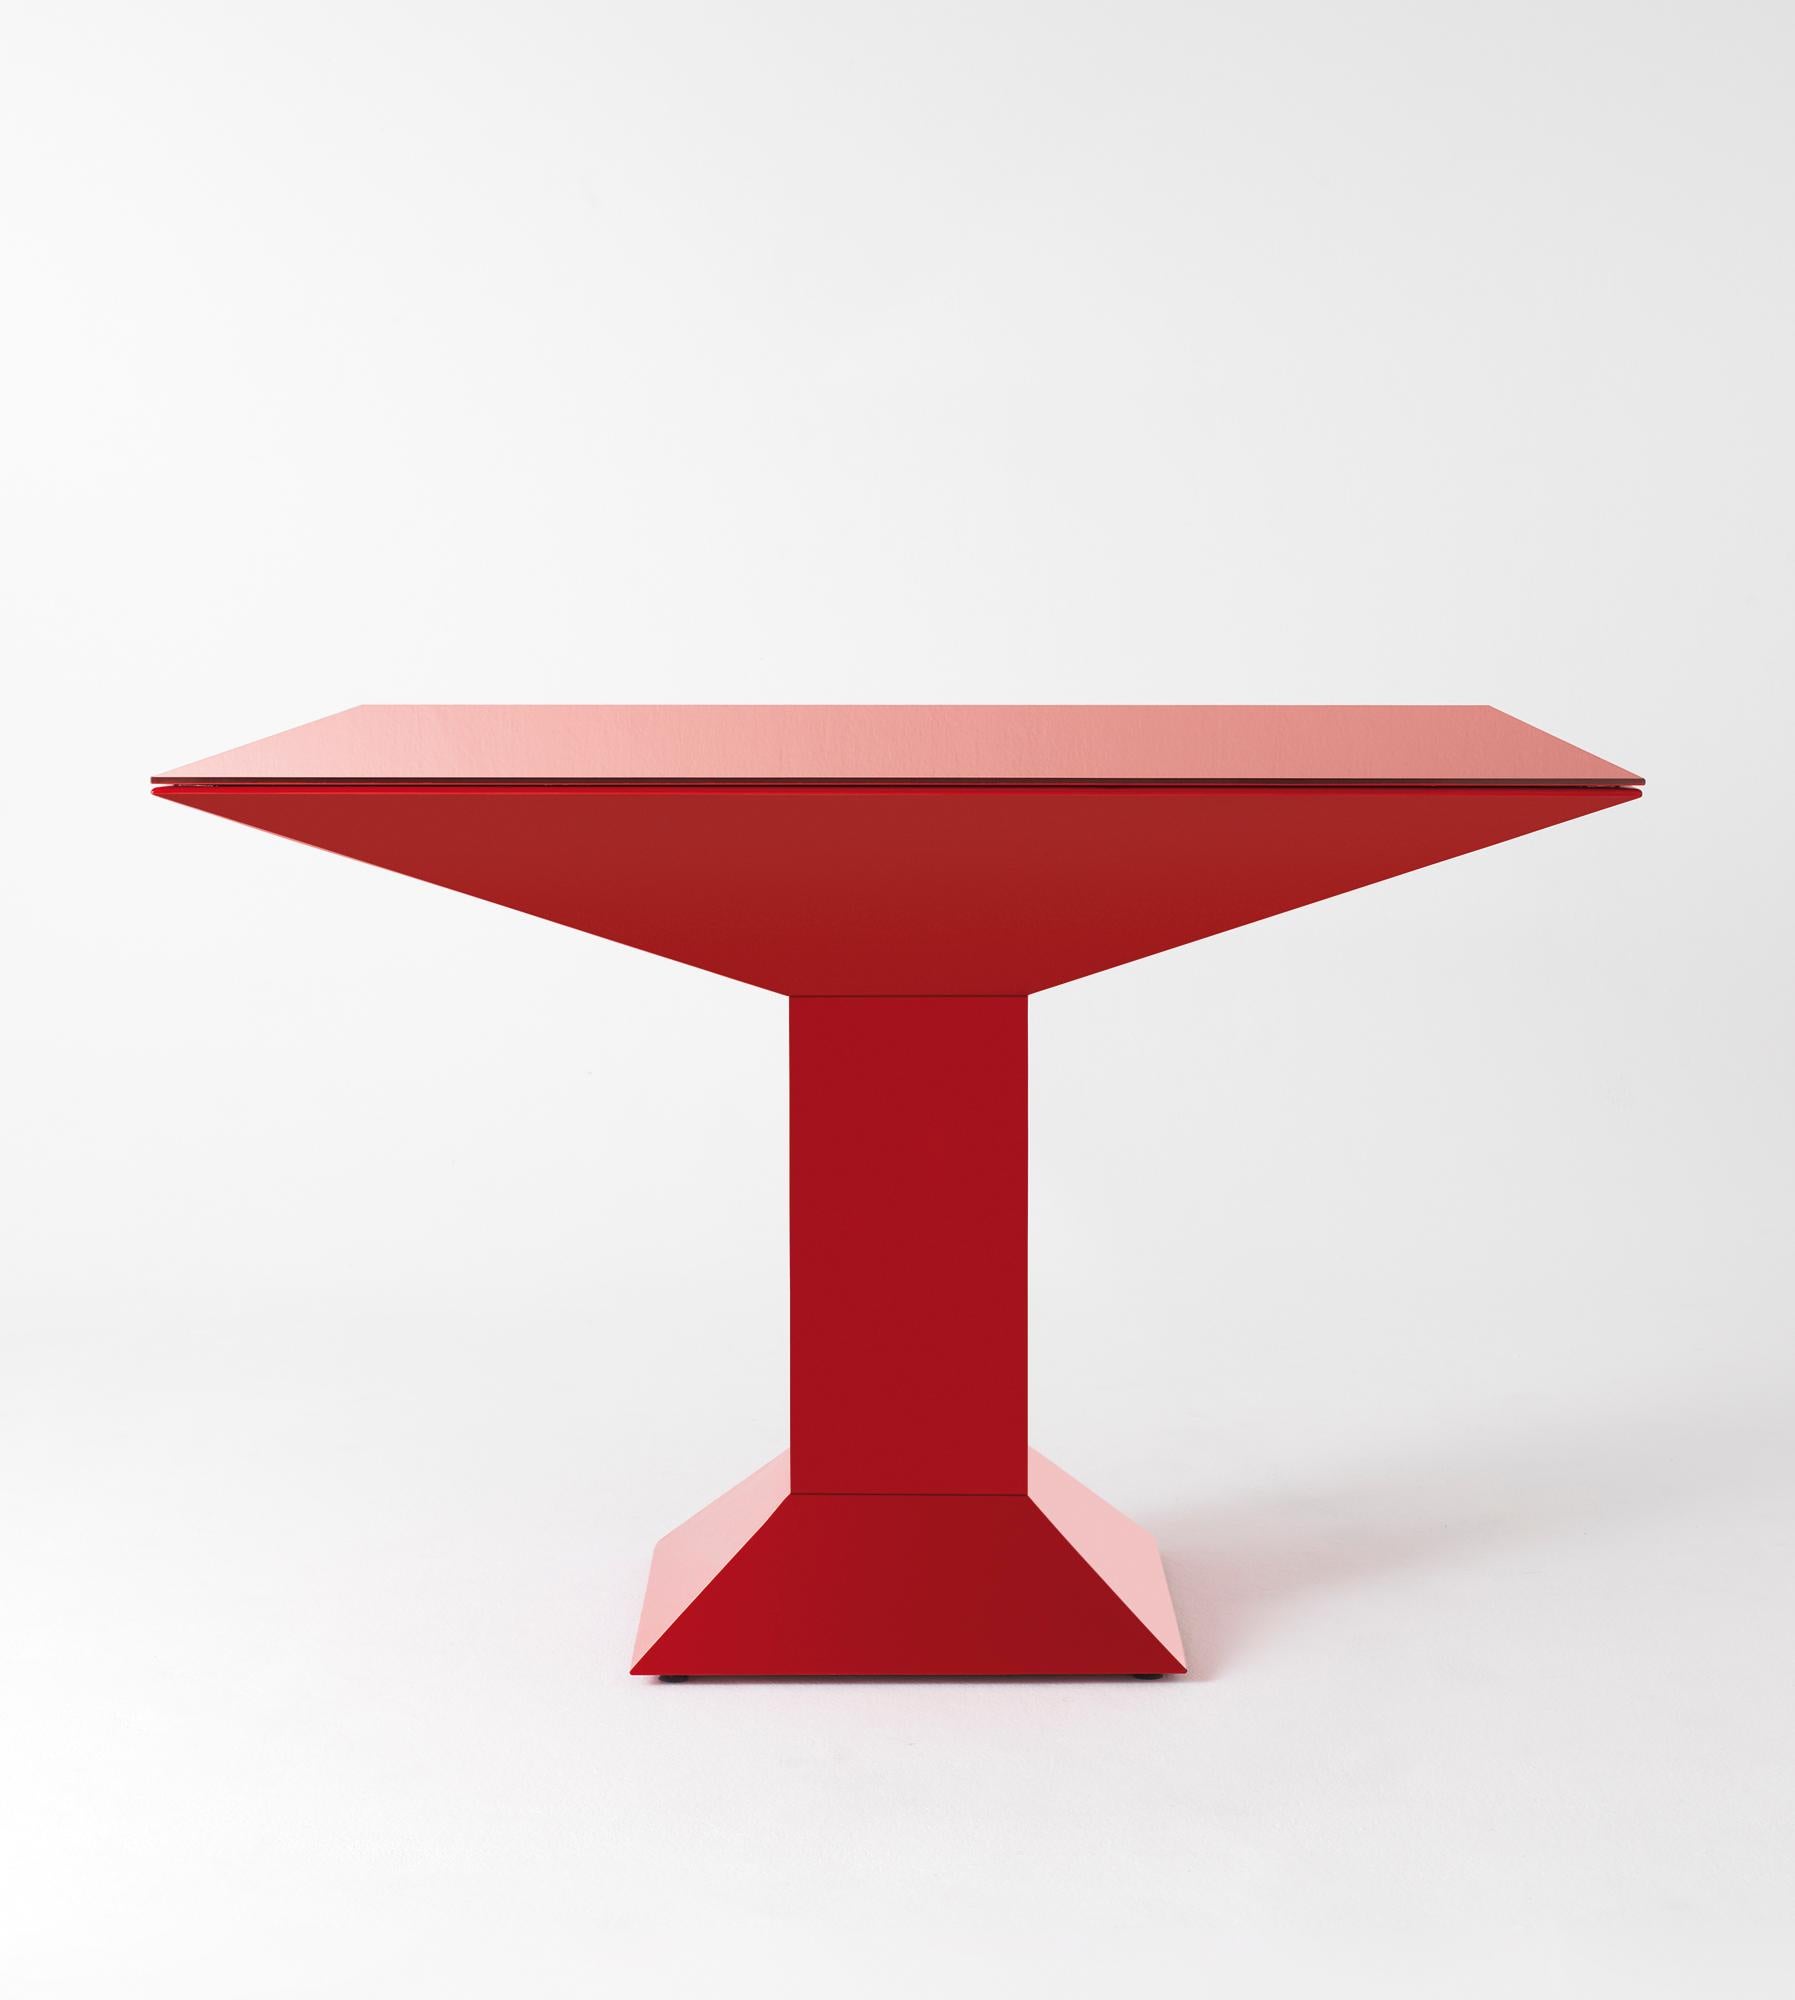 Table à manger Mettsass, Ettore Sottsass
Dimensions : 110 x 110 x 73 H cm
MATERIAUX : acier, verre

La structure est constituée de feuilles d'acier plates peintes en rouge. Le verre du dessus est peint dans la même couleur que la